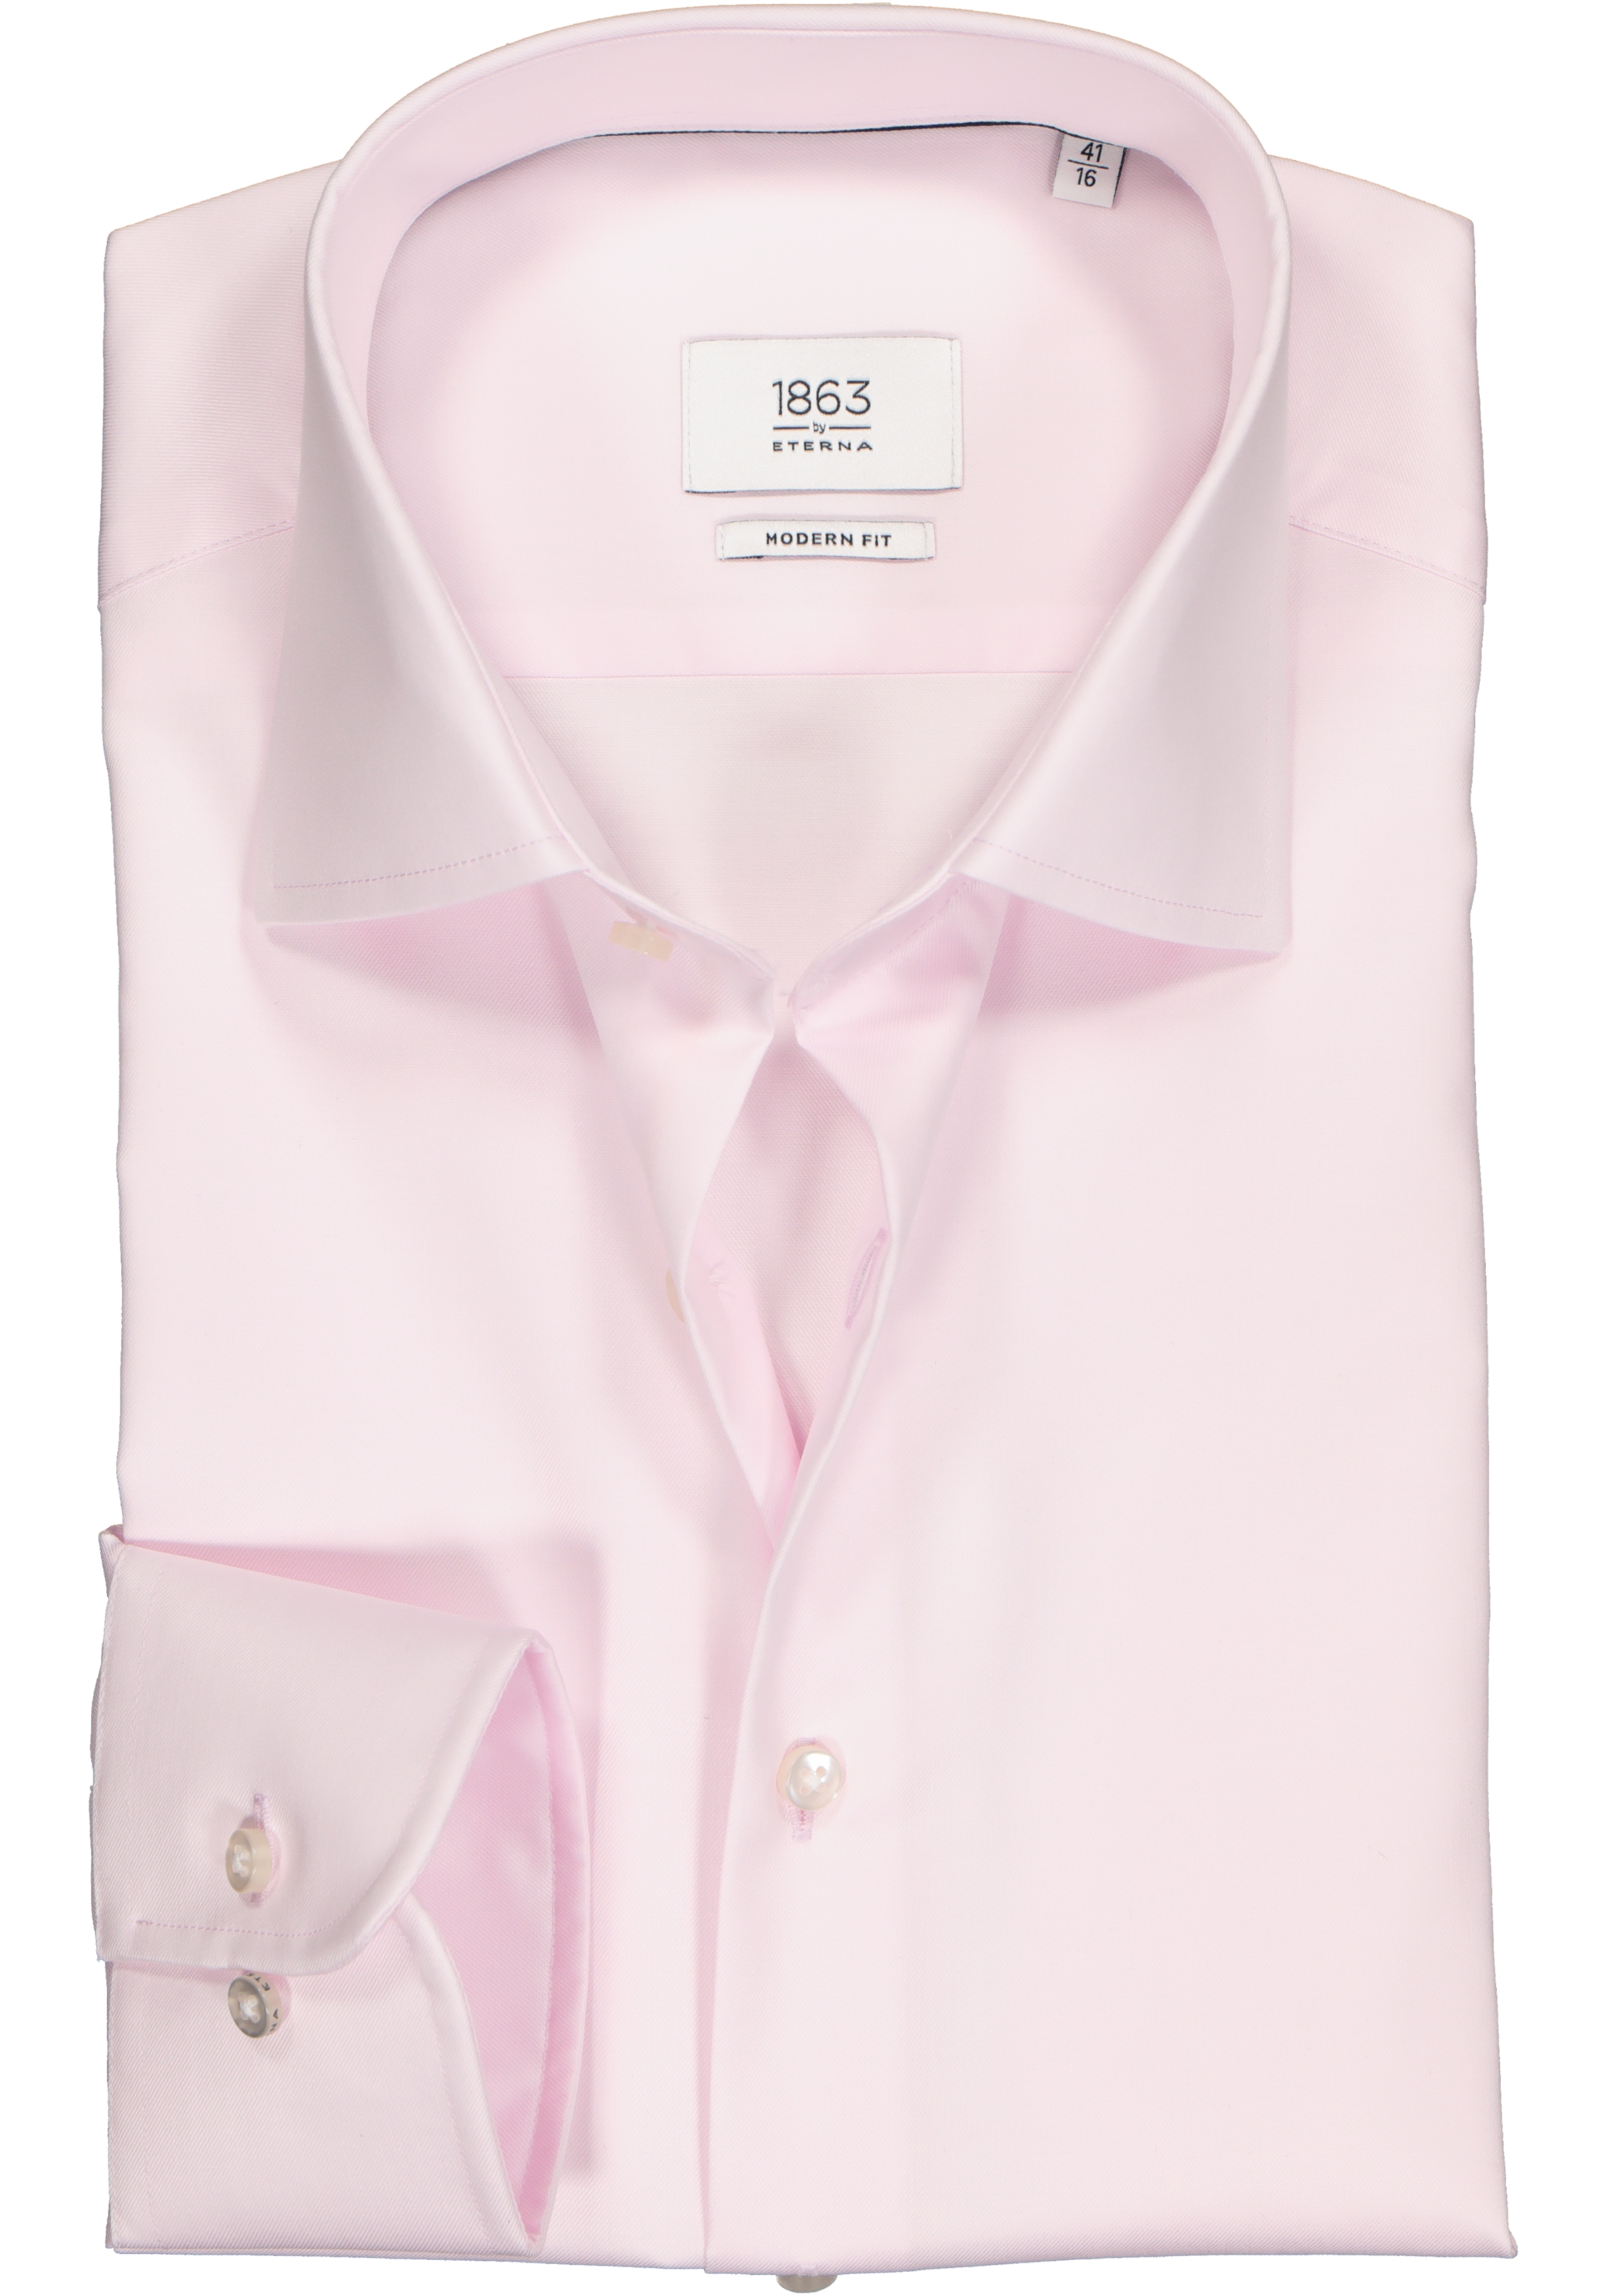 ETERNA 1863 modern fit premium overhemd, 2-ply twill heren overhemd, roze